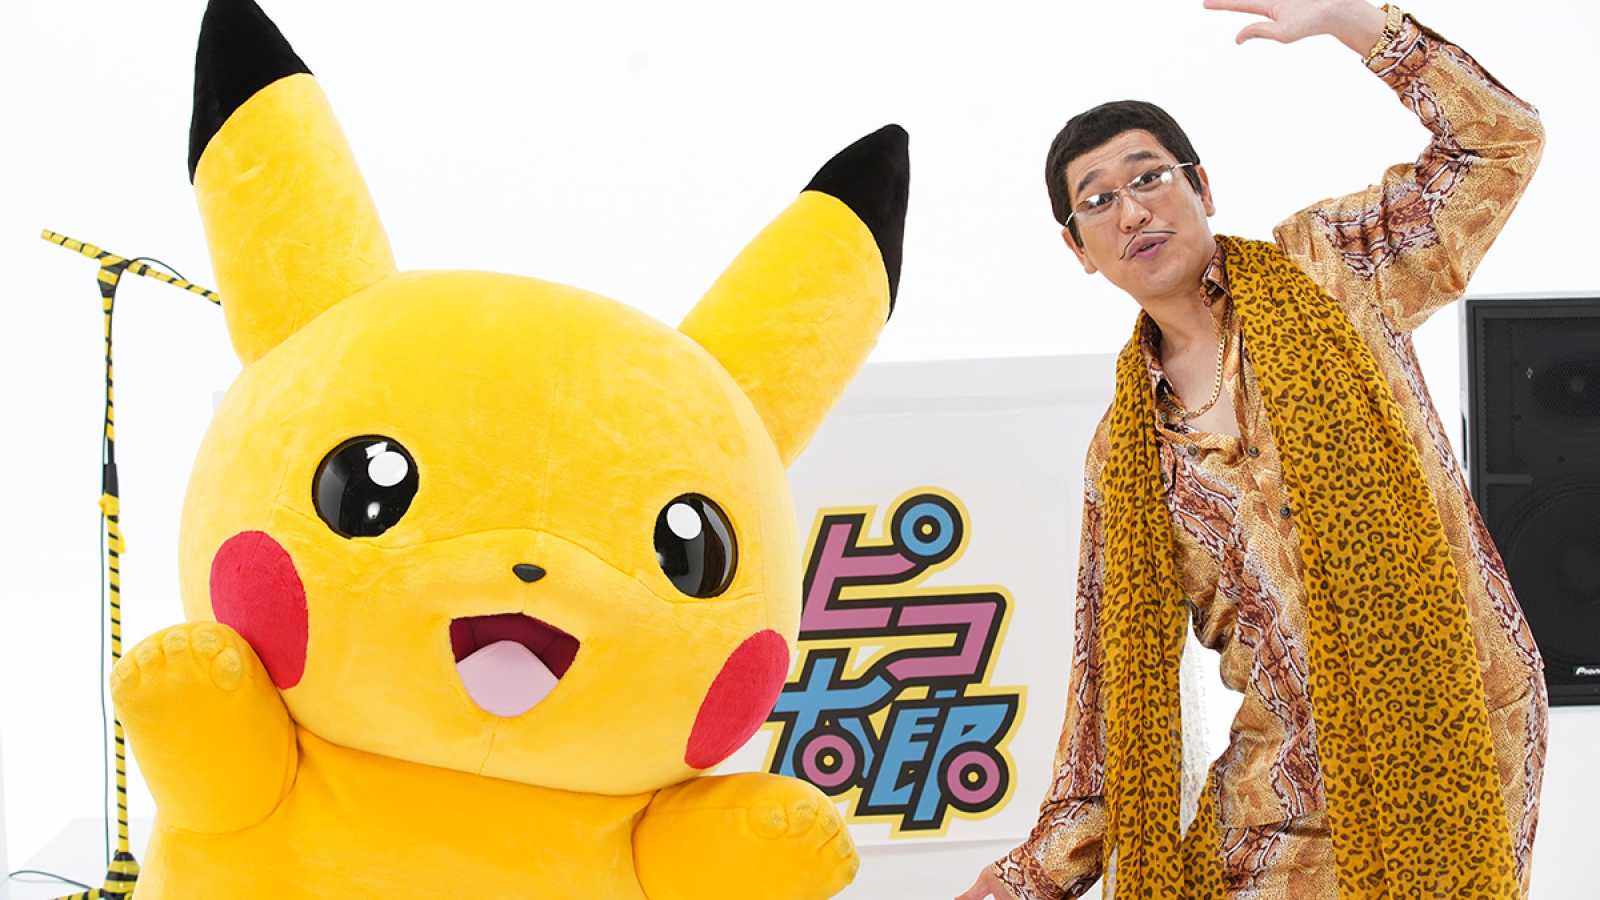 PIKOTARO Teams Up with Pikachu for New Music Video "PIKA to PIKO" © Pikachu & PIKOTARO